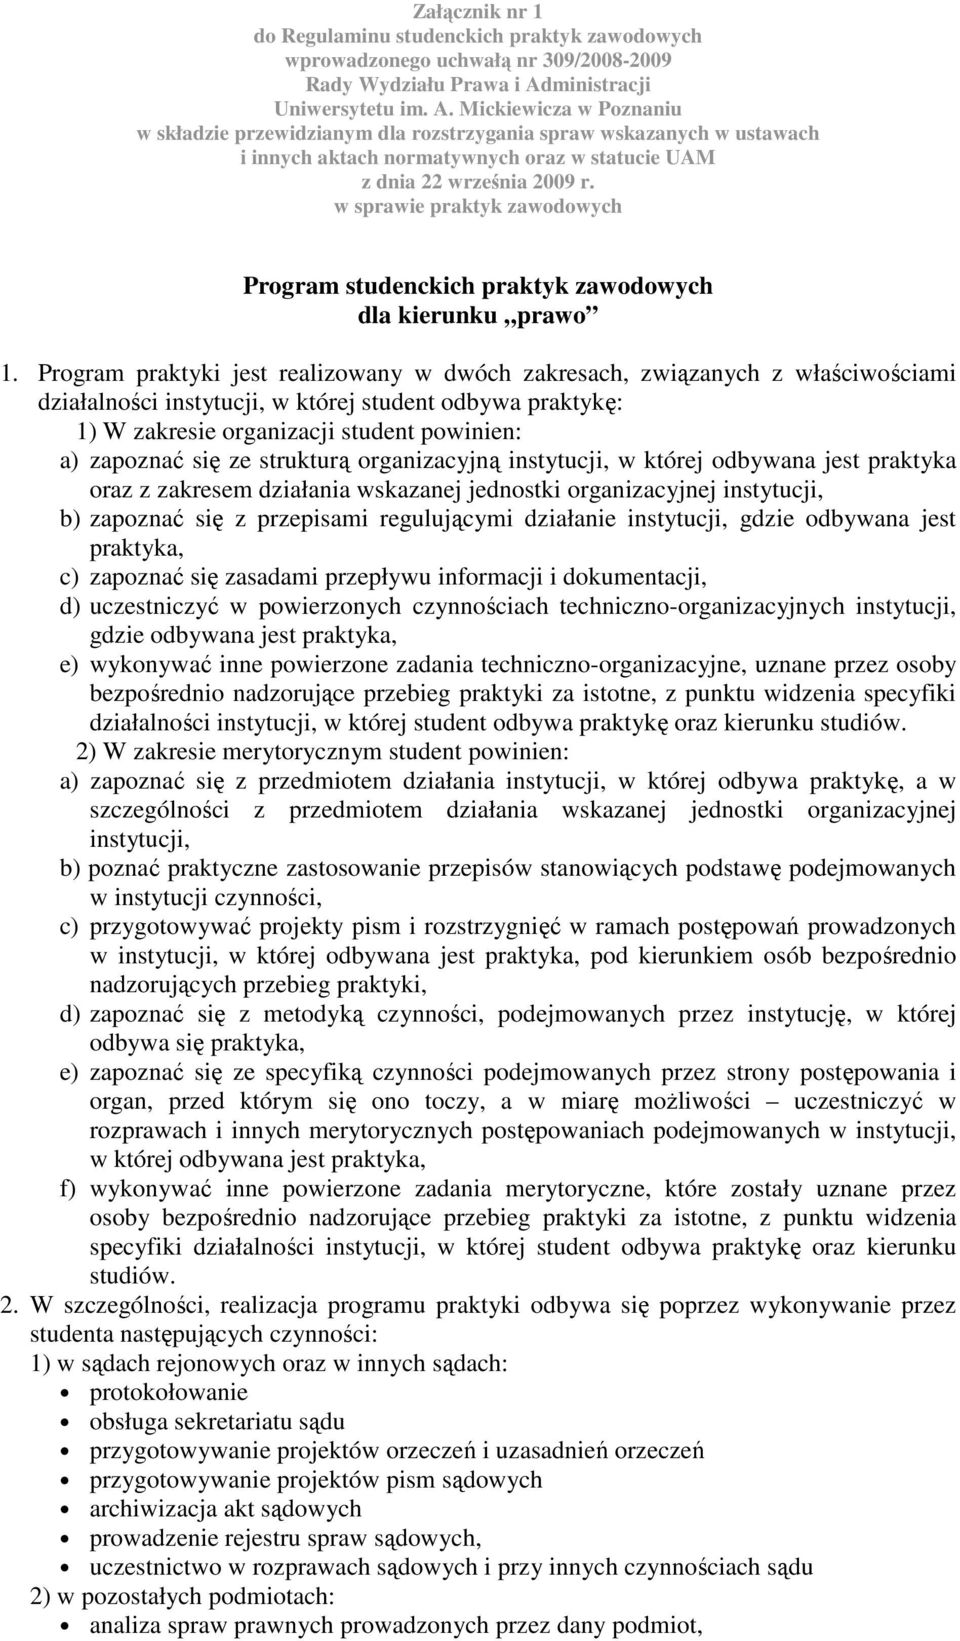 Mickiewicza w Poznaniu w składzie przewidzianym dla rozstrzygania spraw wskazanych w ustawach i innych aktach normatywnych oraz w statucie UAM z dnia 22 września 2009 r.